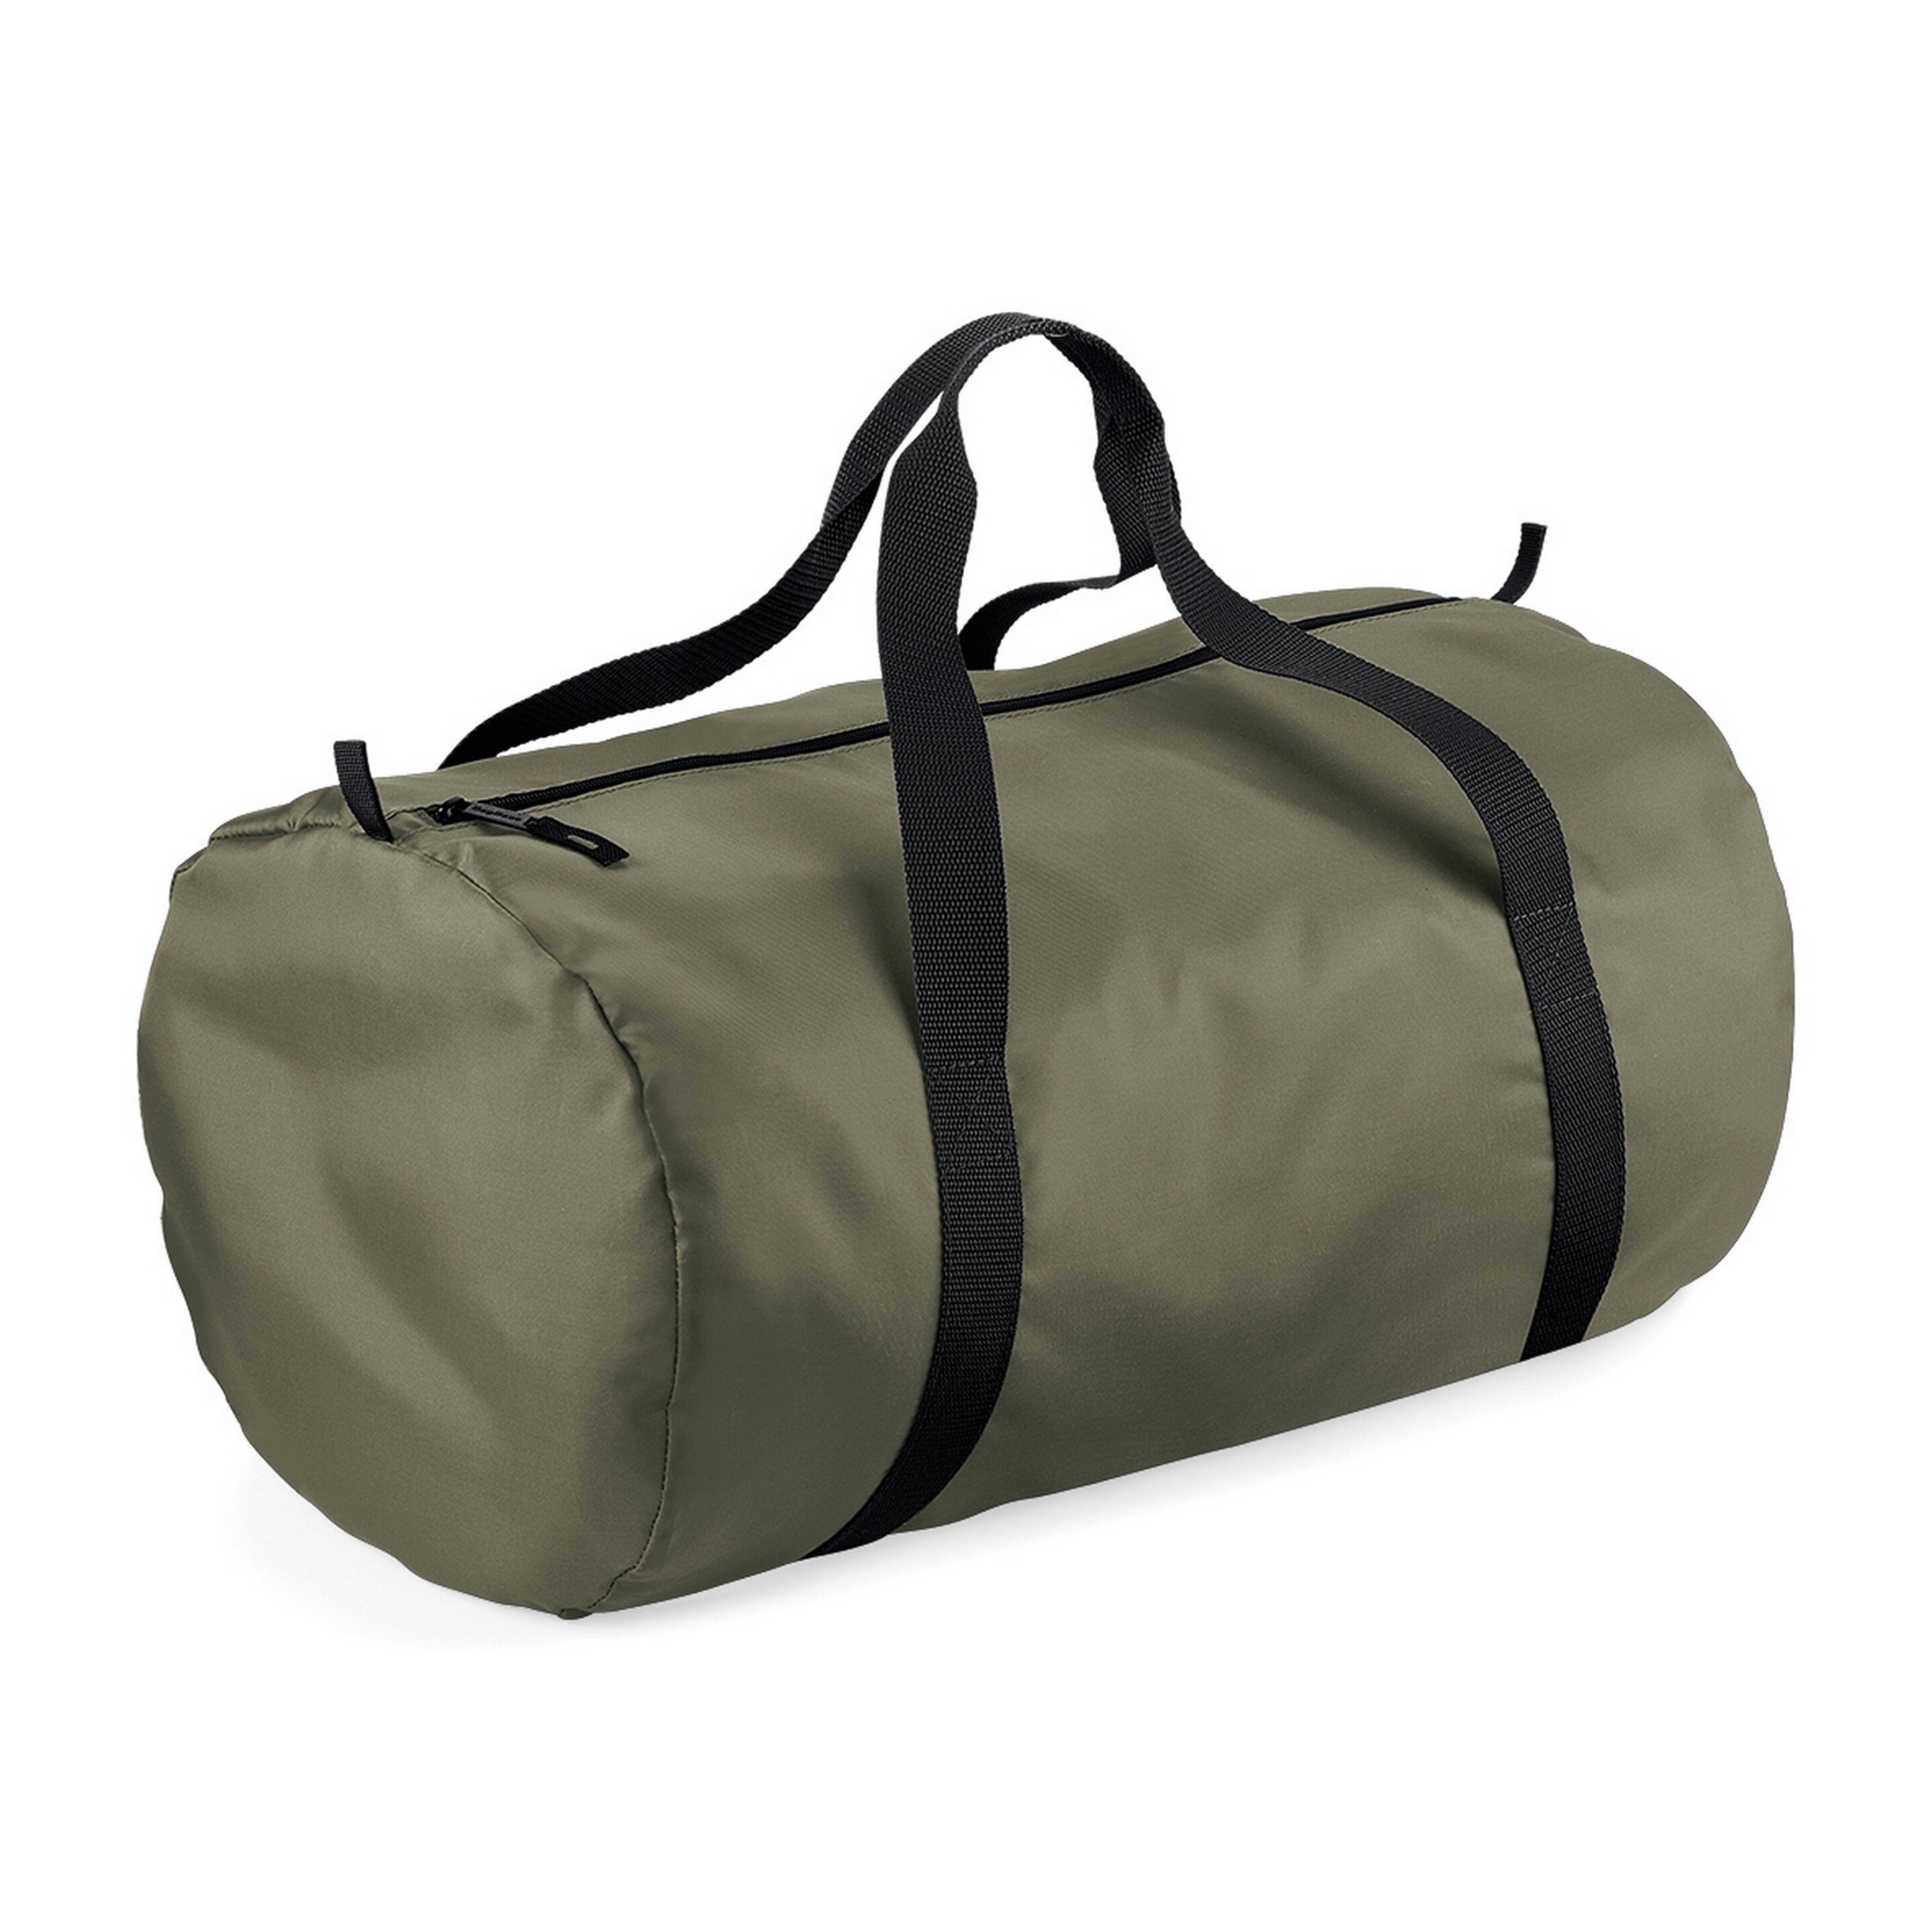 Bolsa De Deporte / De Viaje Impermeable Modelo Barrel Packaway (32 Litros) Bagbase (Verde)